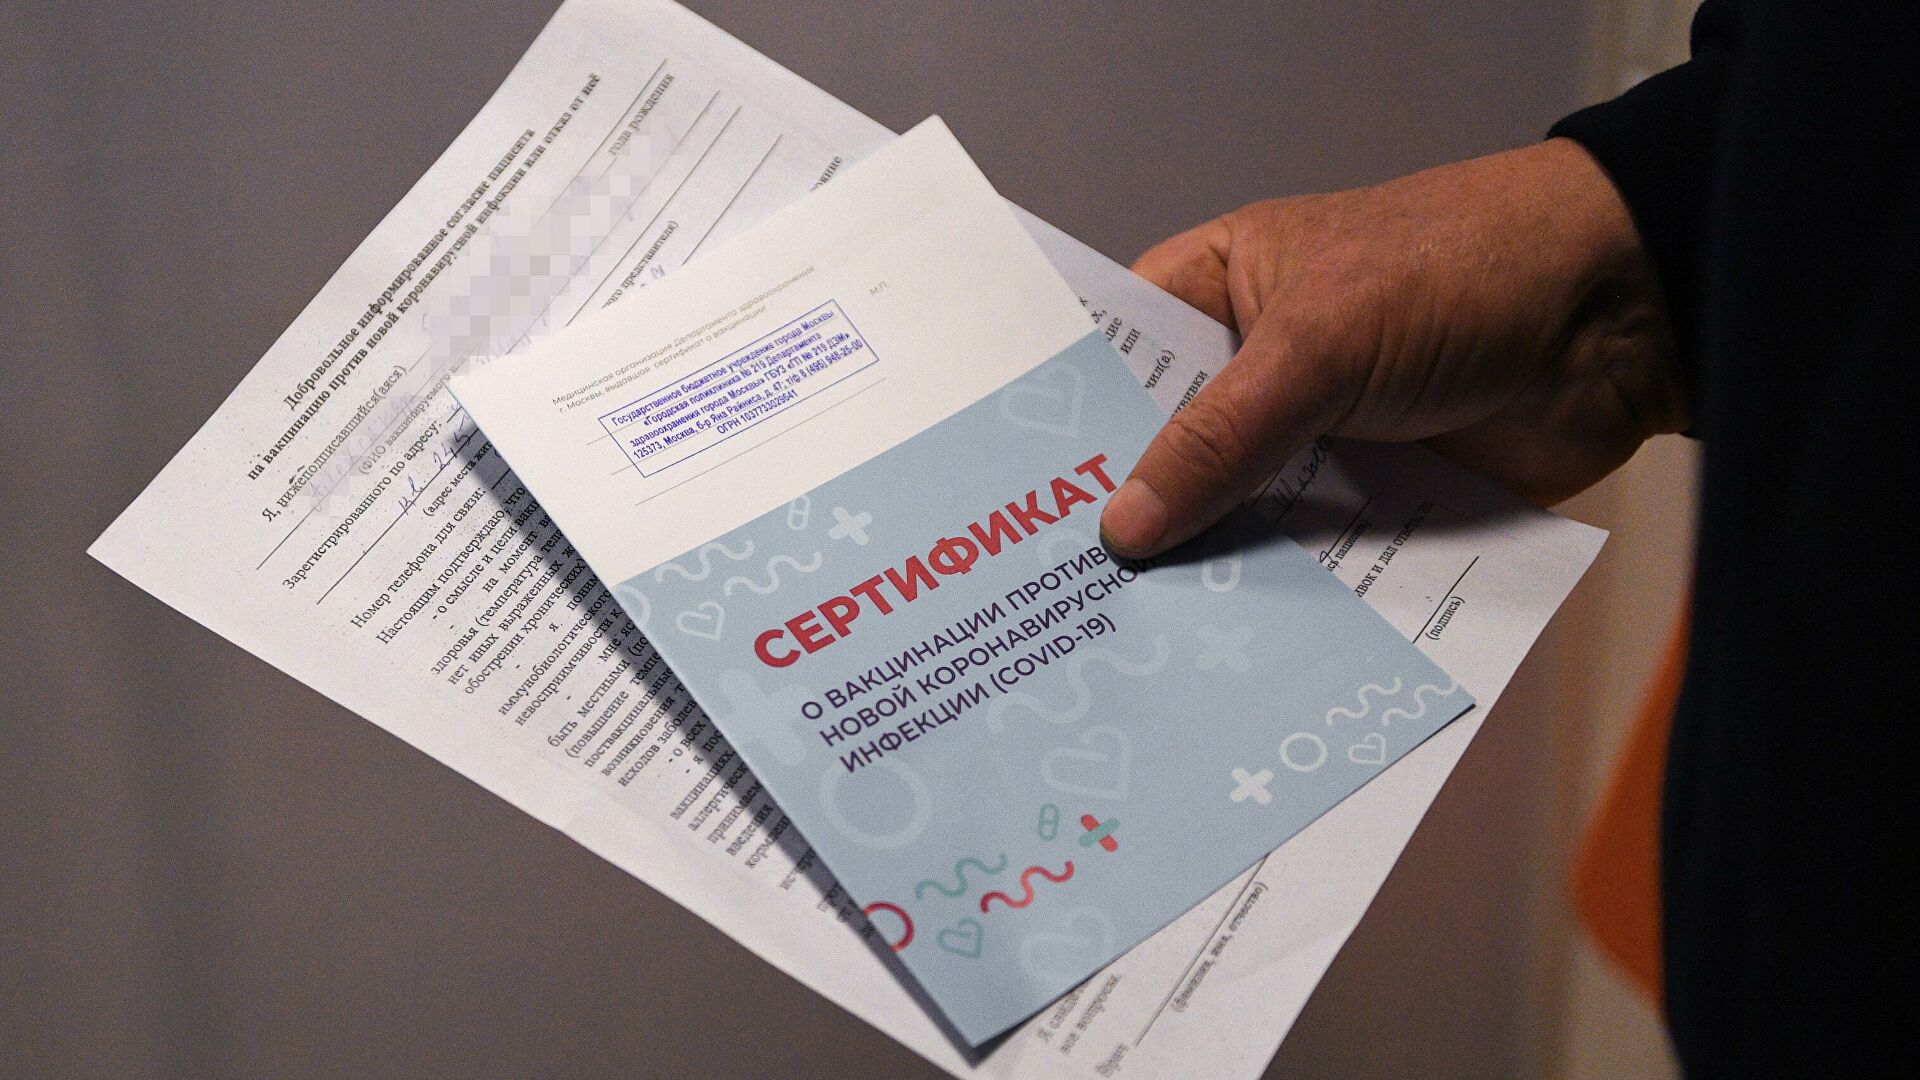 Гинцбург рассказал, что покупка поддельных сертификатов о вакцинации может вызвать появление новых штаммов коронавируса